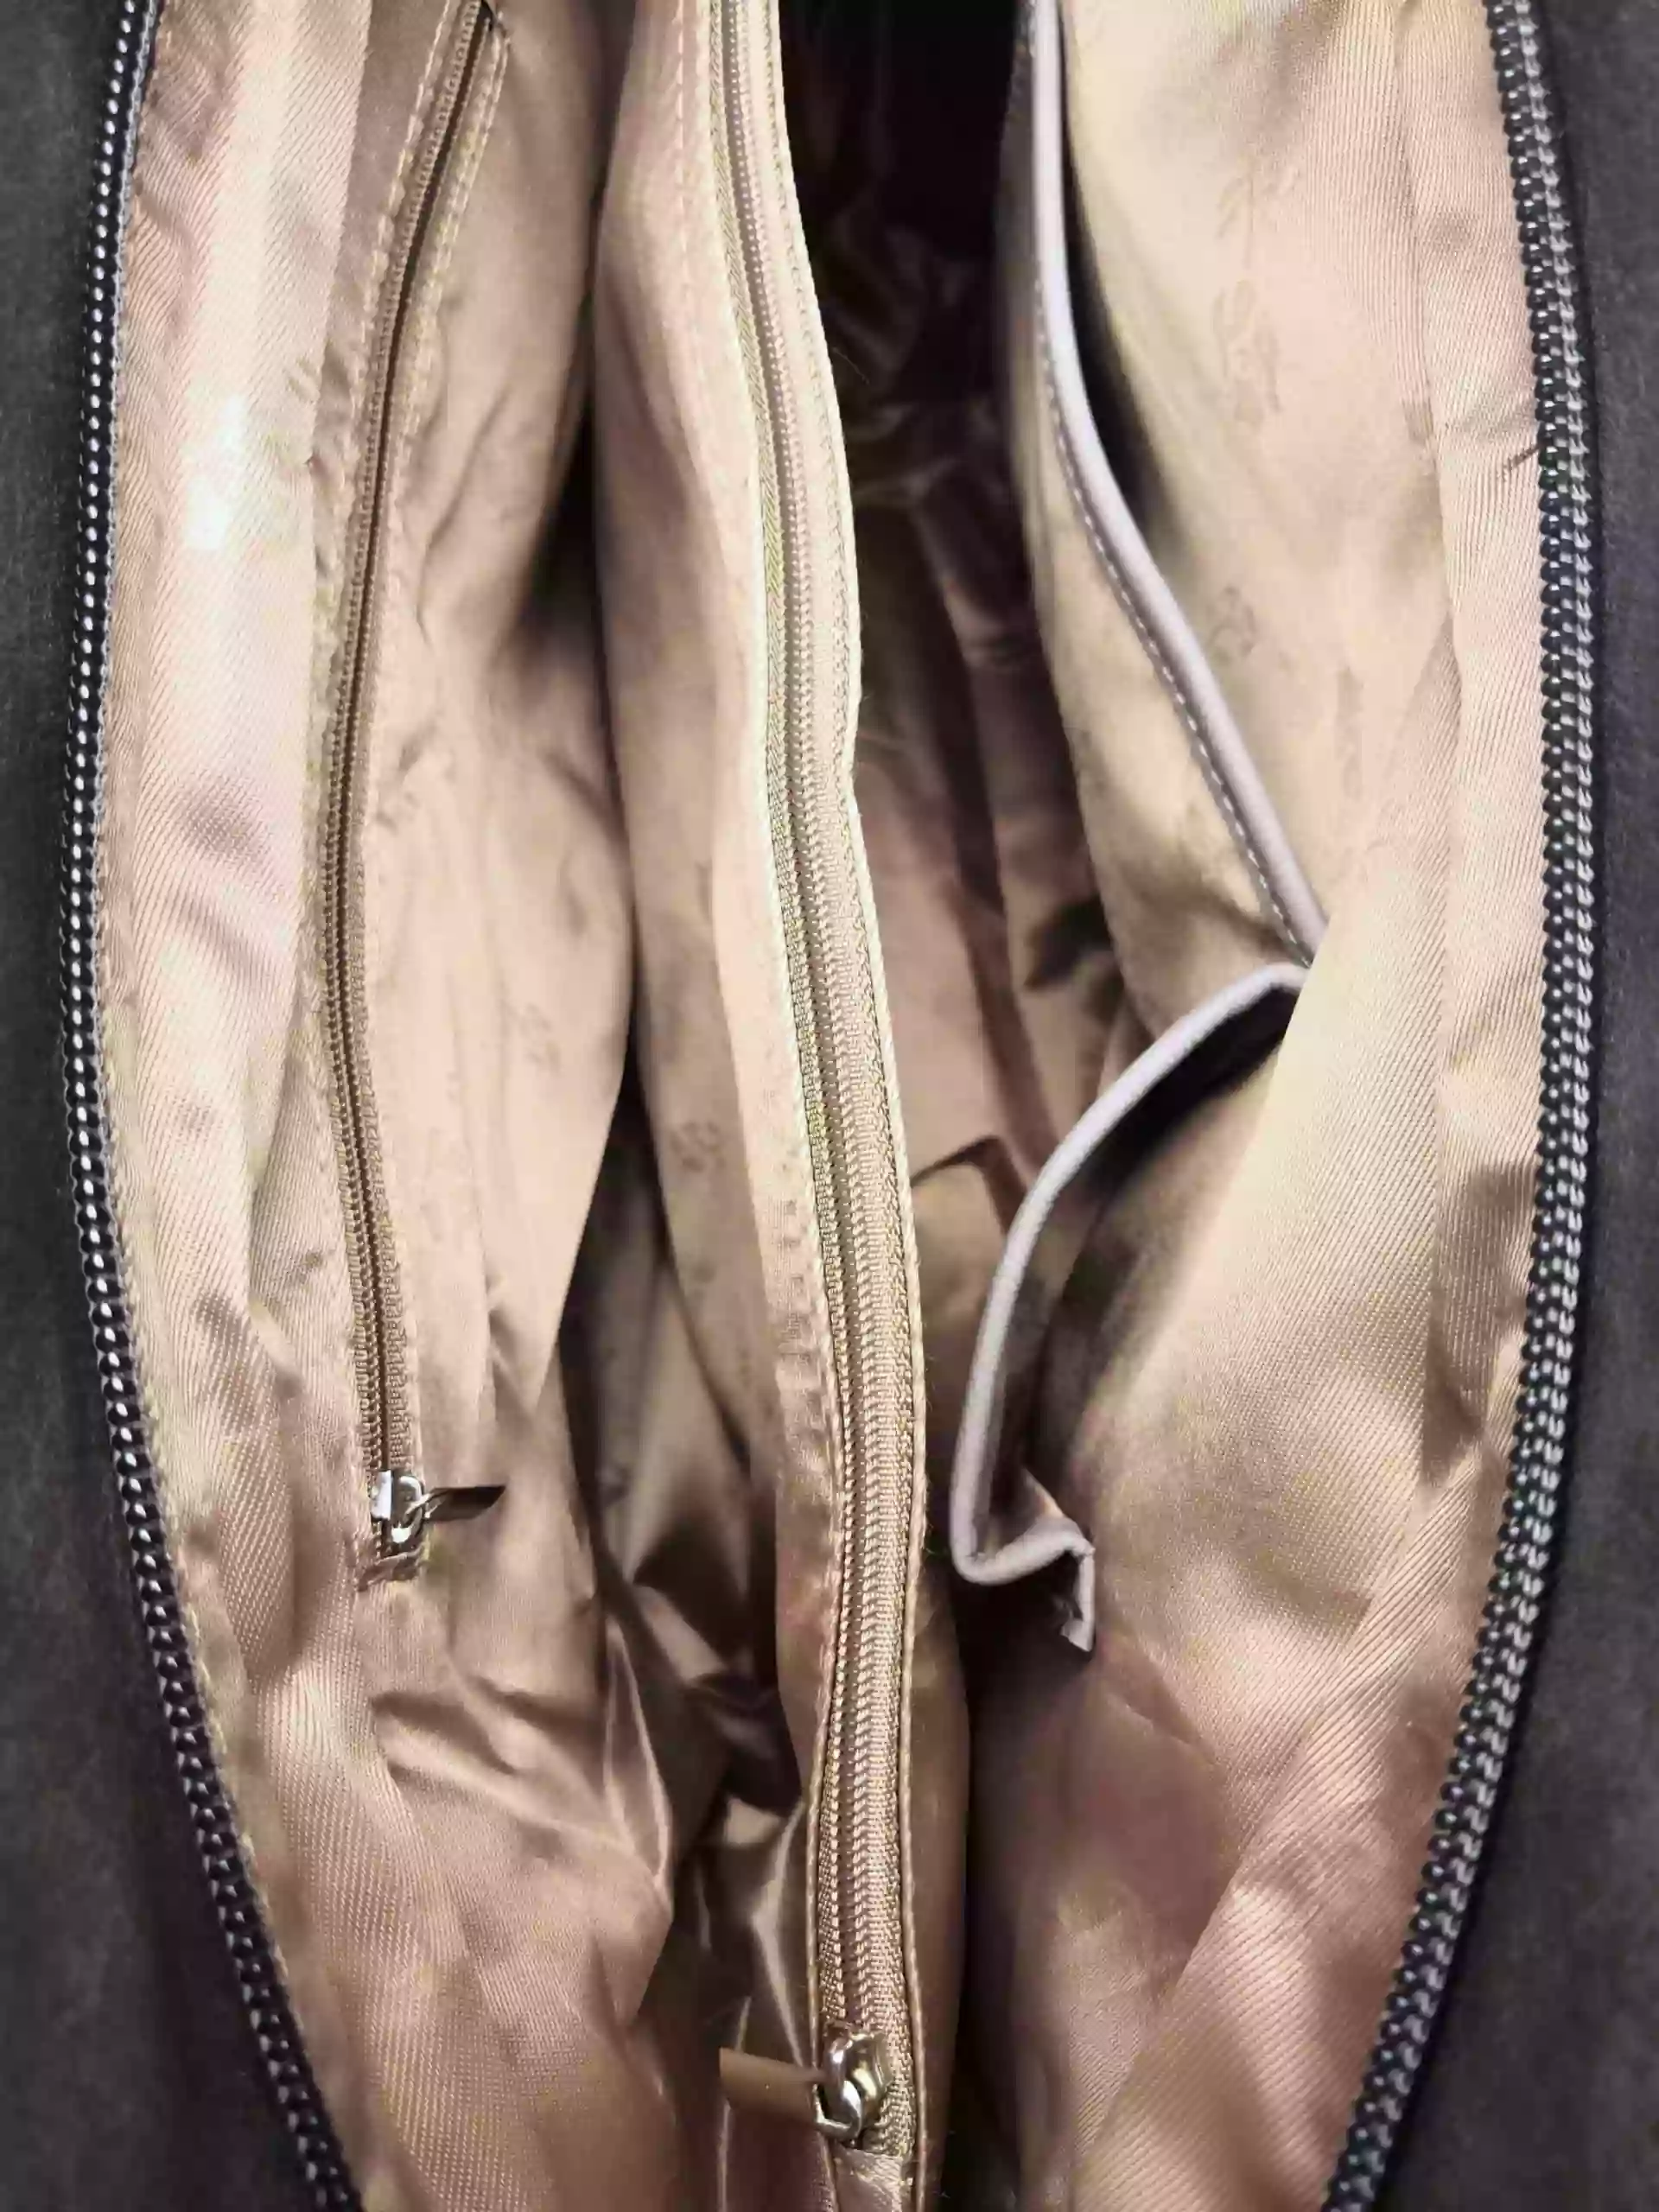 Dámská kabelka přes rameno se slušivým vzorem, Tapple H181178, tmavě šedá, vnitřní uspořádání kabelky